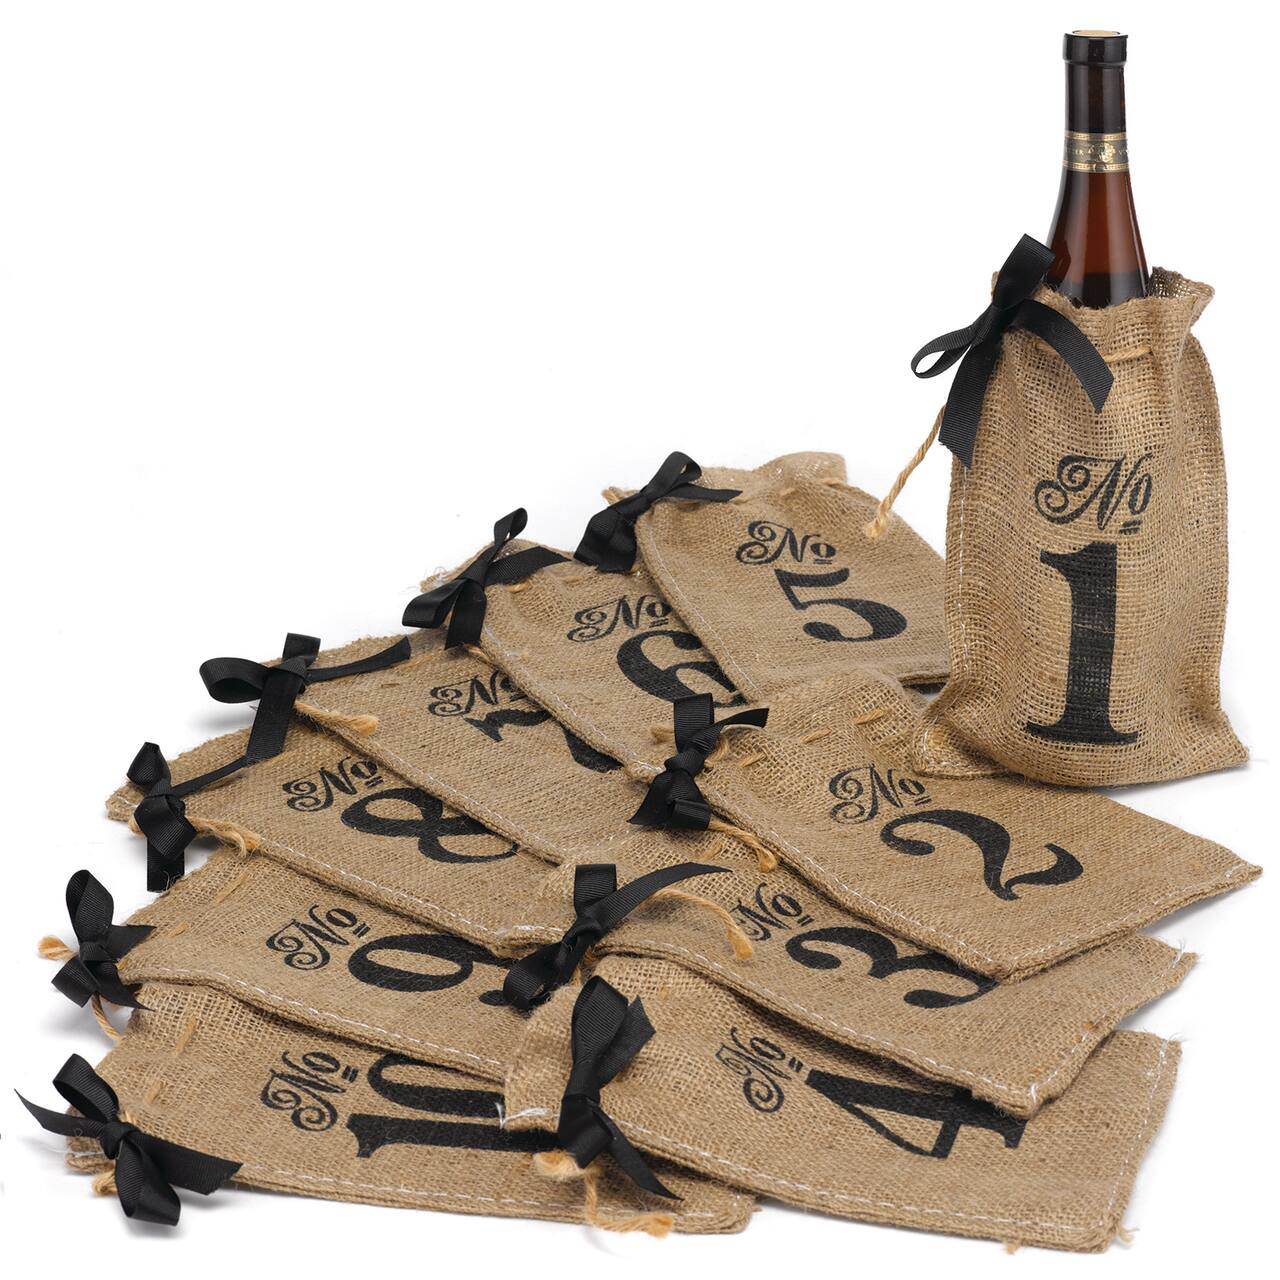 Hortense B. Hewitt Co. Numbers 1-10 Burlap Table Number Wine Bags